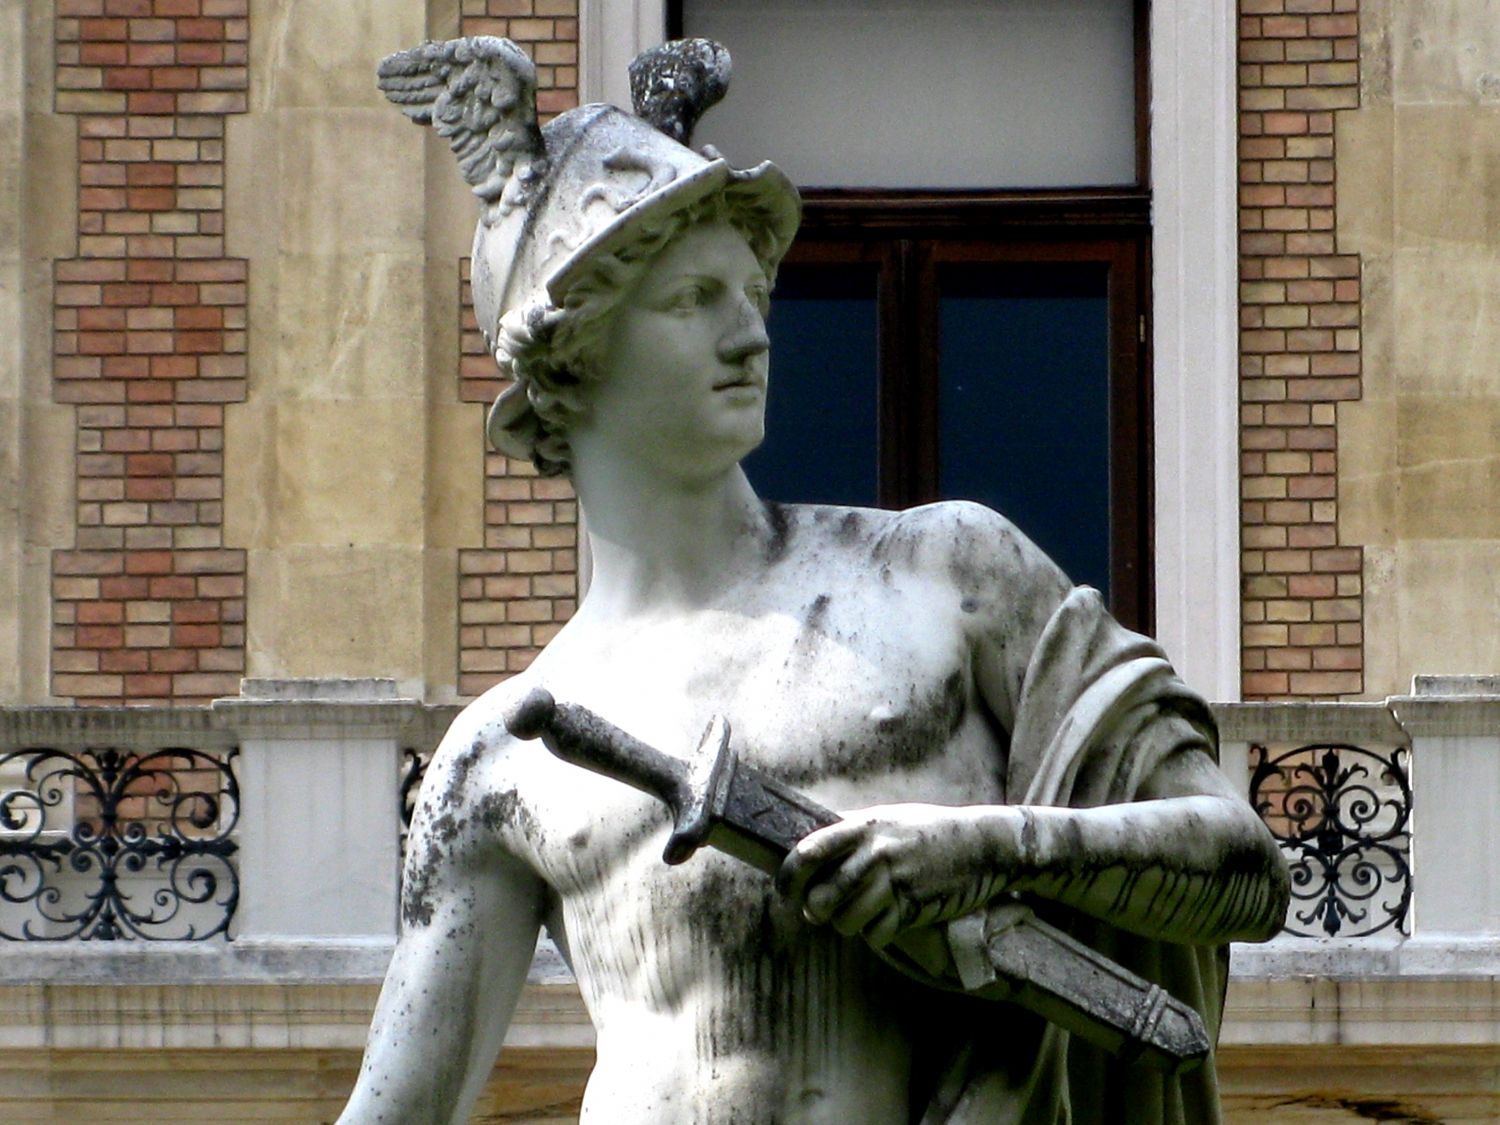 Hermesstatue von Ernst Herter, Hermesvilla.